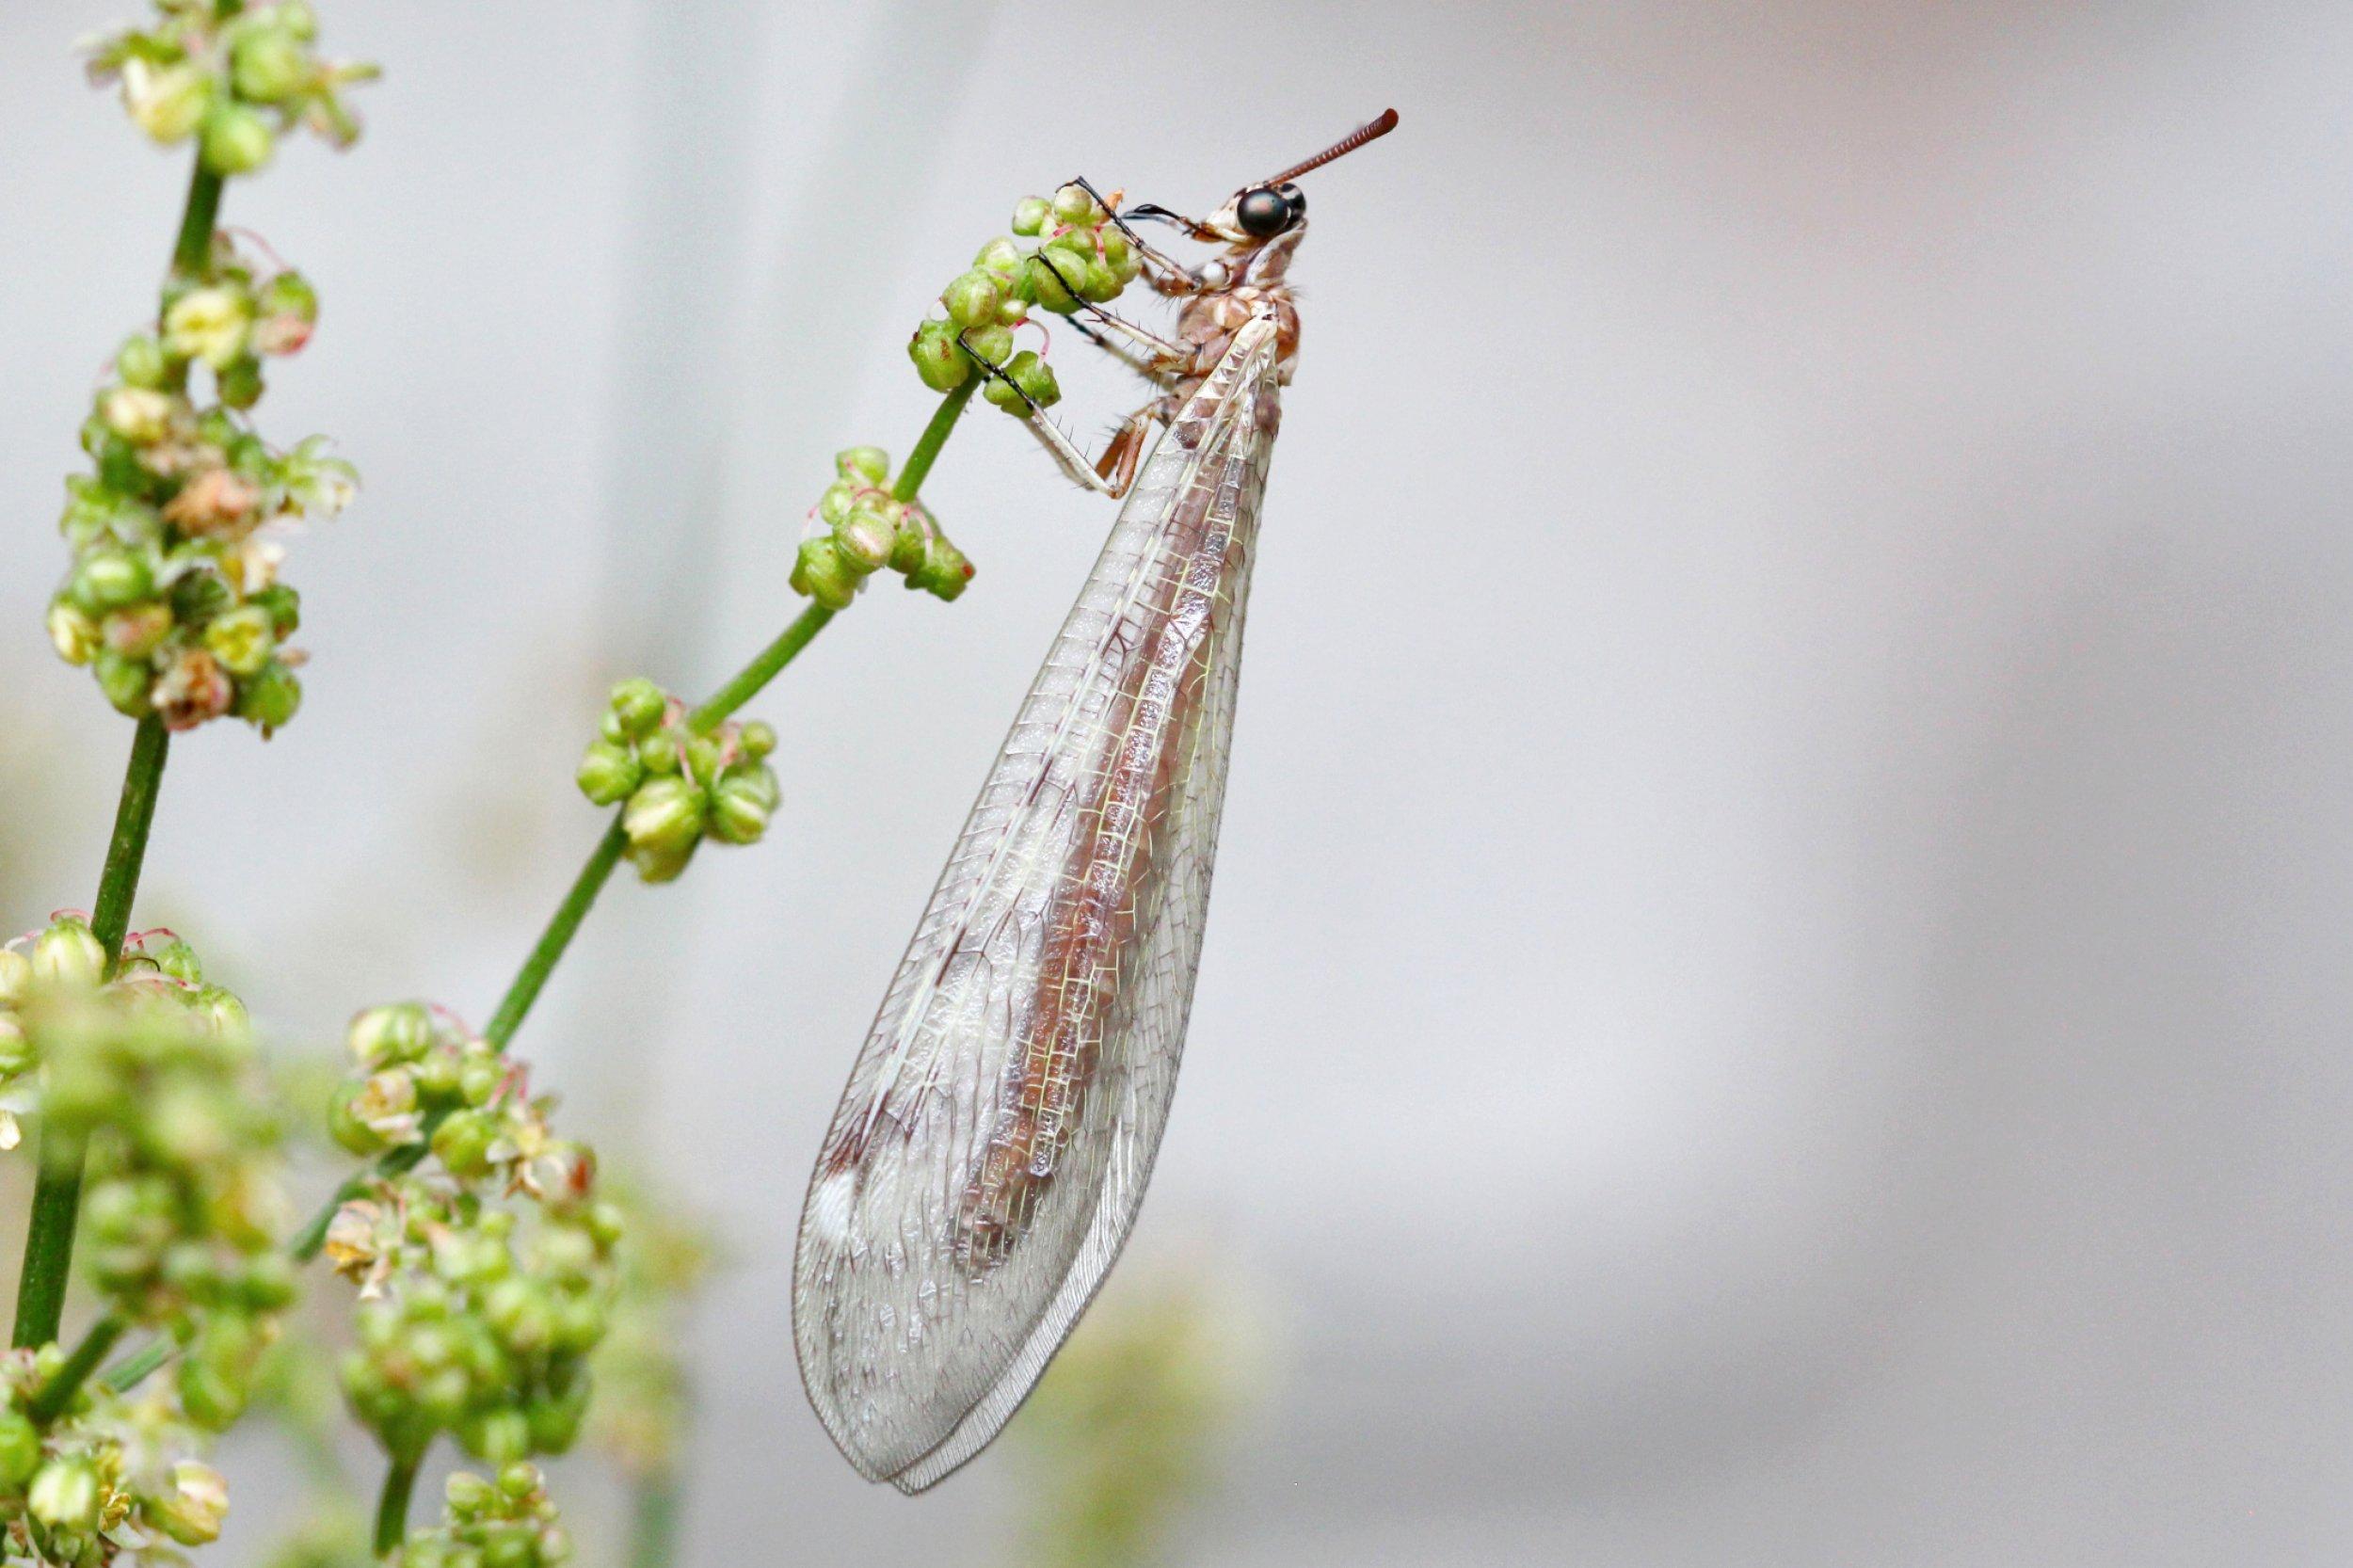 Ein bräunliches Insekt mit langen, transparenten Flügen klammert sich mit seinen sechs Beinen an einen grünen Pflanzenstängel mit zahlreichen kleinen, grün-rötlichen Blüten.